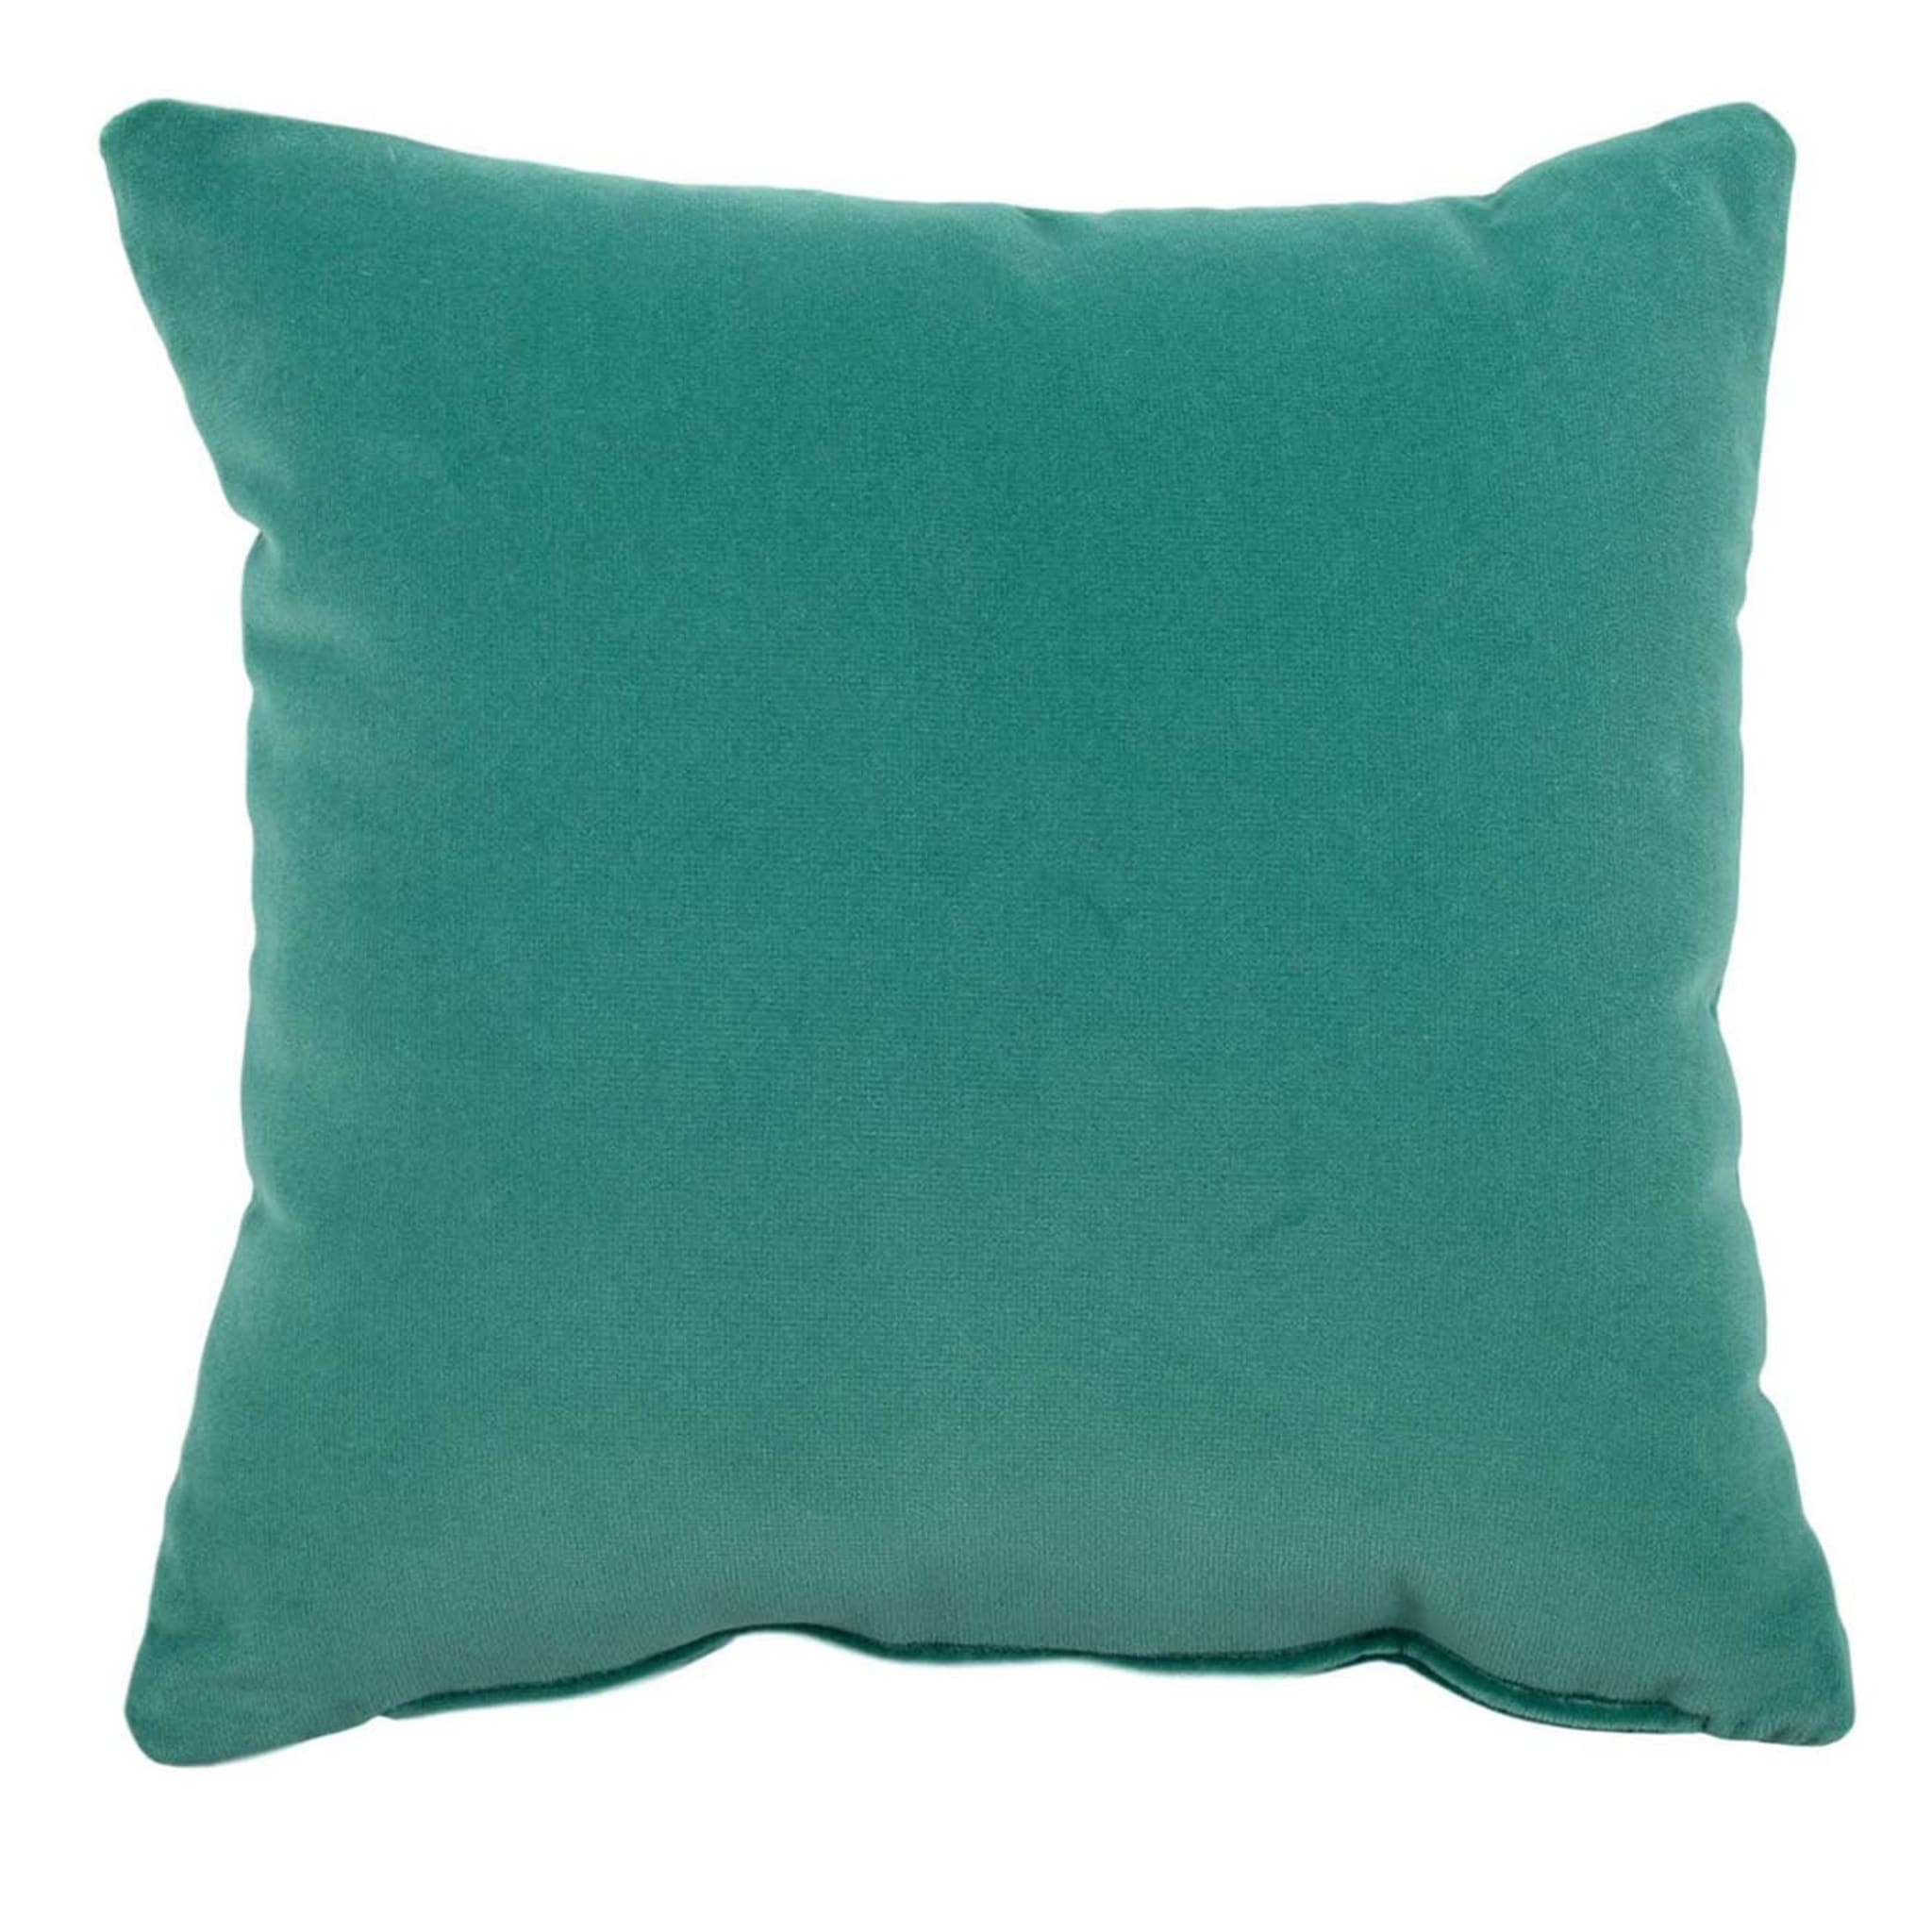 Carrè Turquoise Throw Cushion - Main view